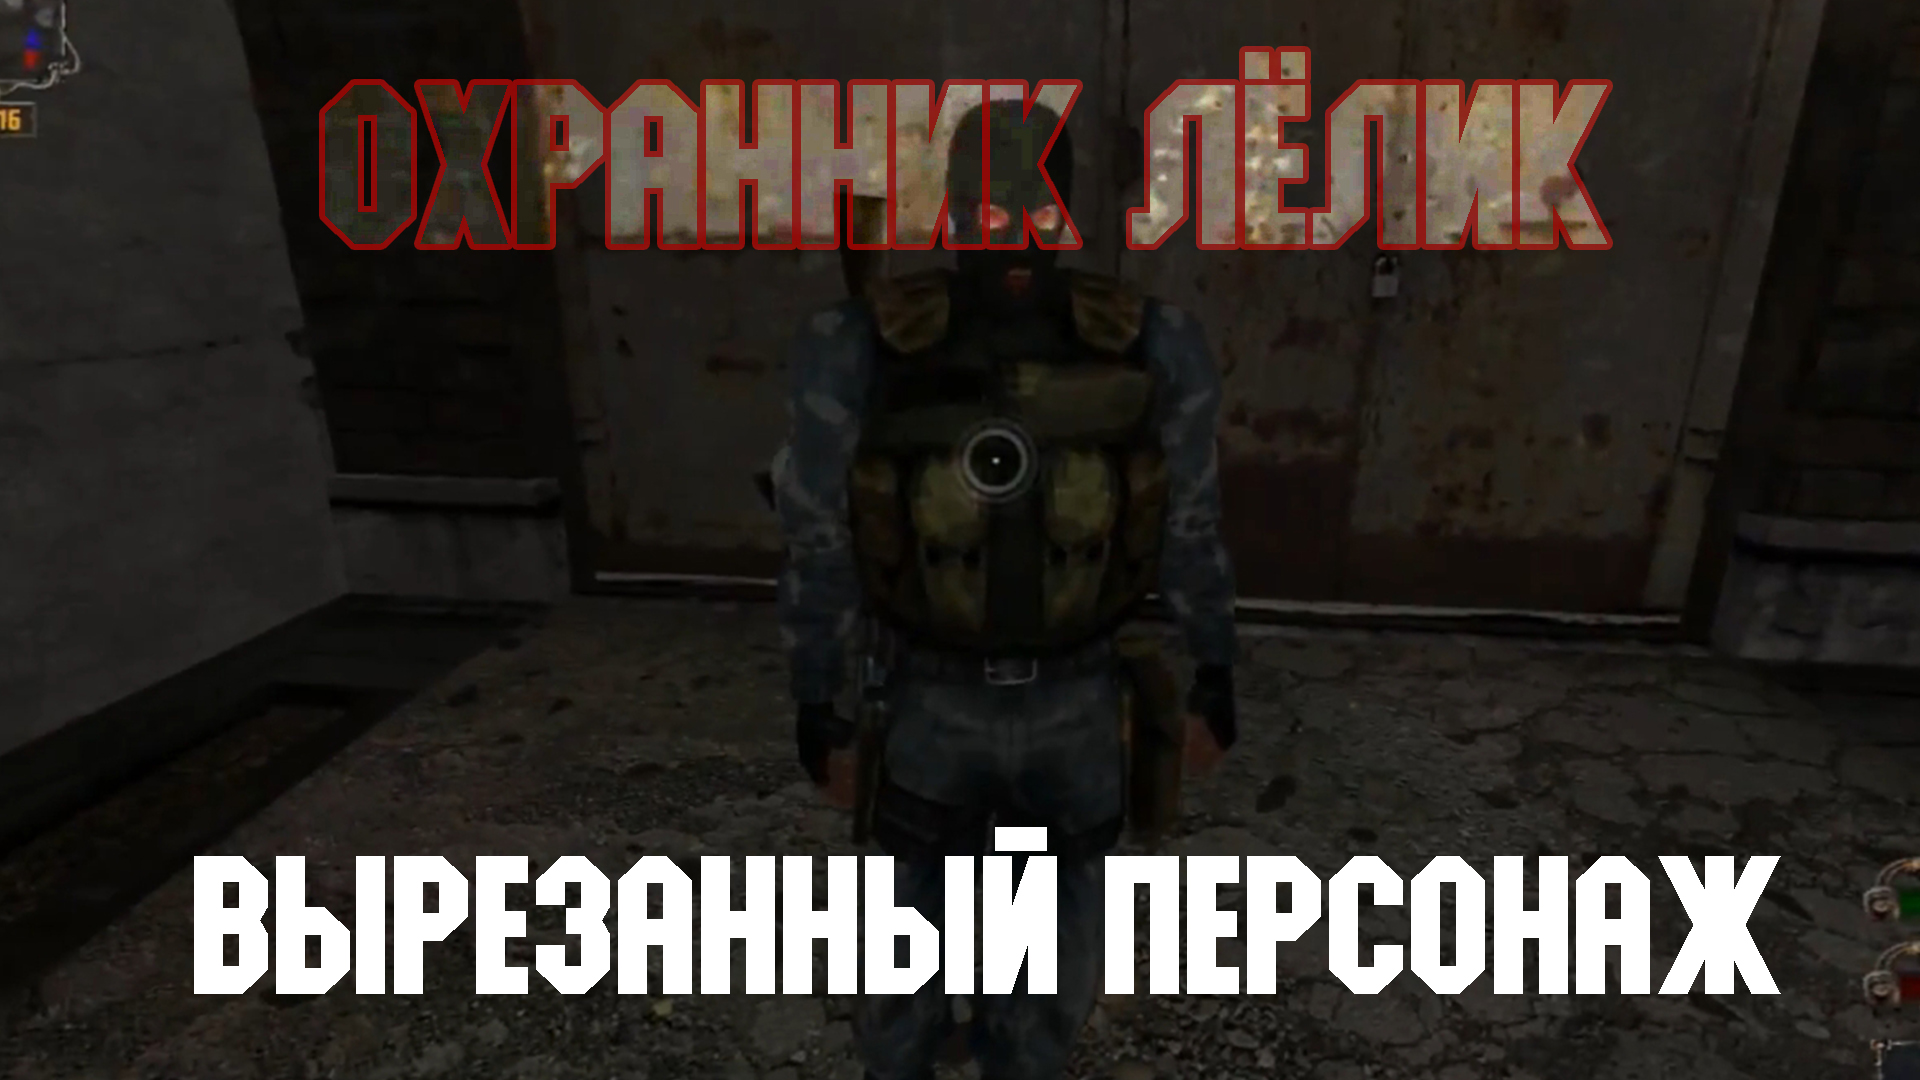 STALKER Тень Чернобыля. Смотр вырезанного персонажа "Лёлик"